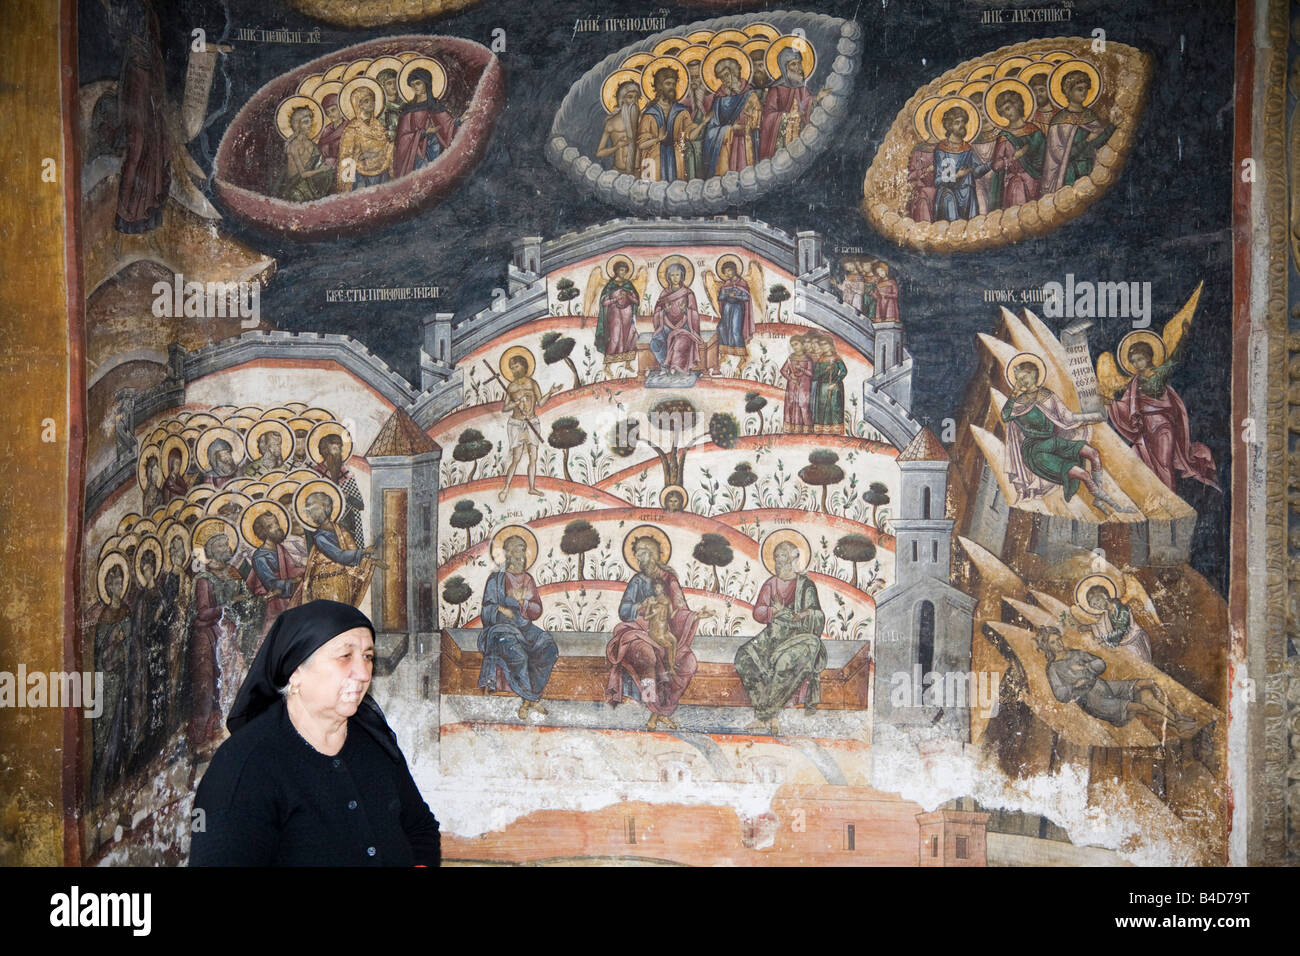 Vieille femme de peinture religieuse sur le mur à l'extérieur de l'église dans le monastère fortifié du XIVe siècle. Cozia Transylvanie Roumanie Europe Banque D'Images